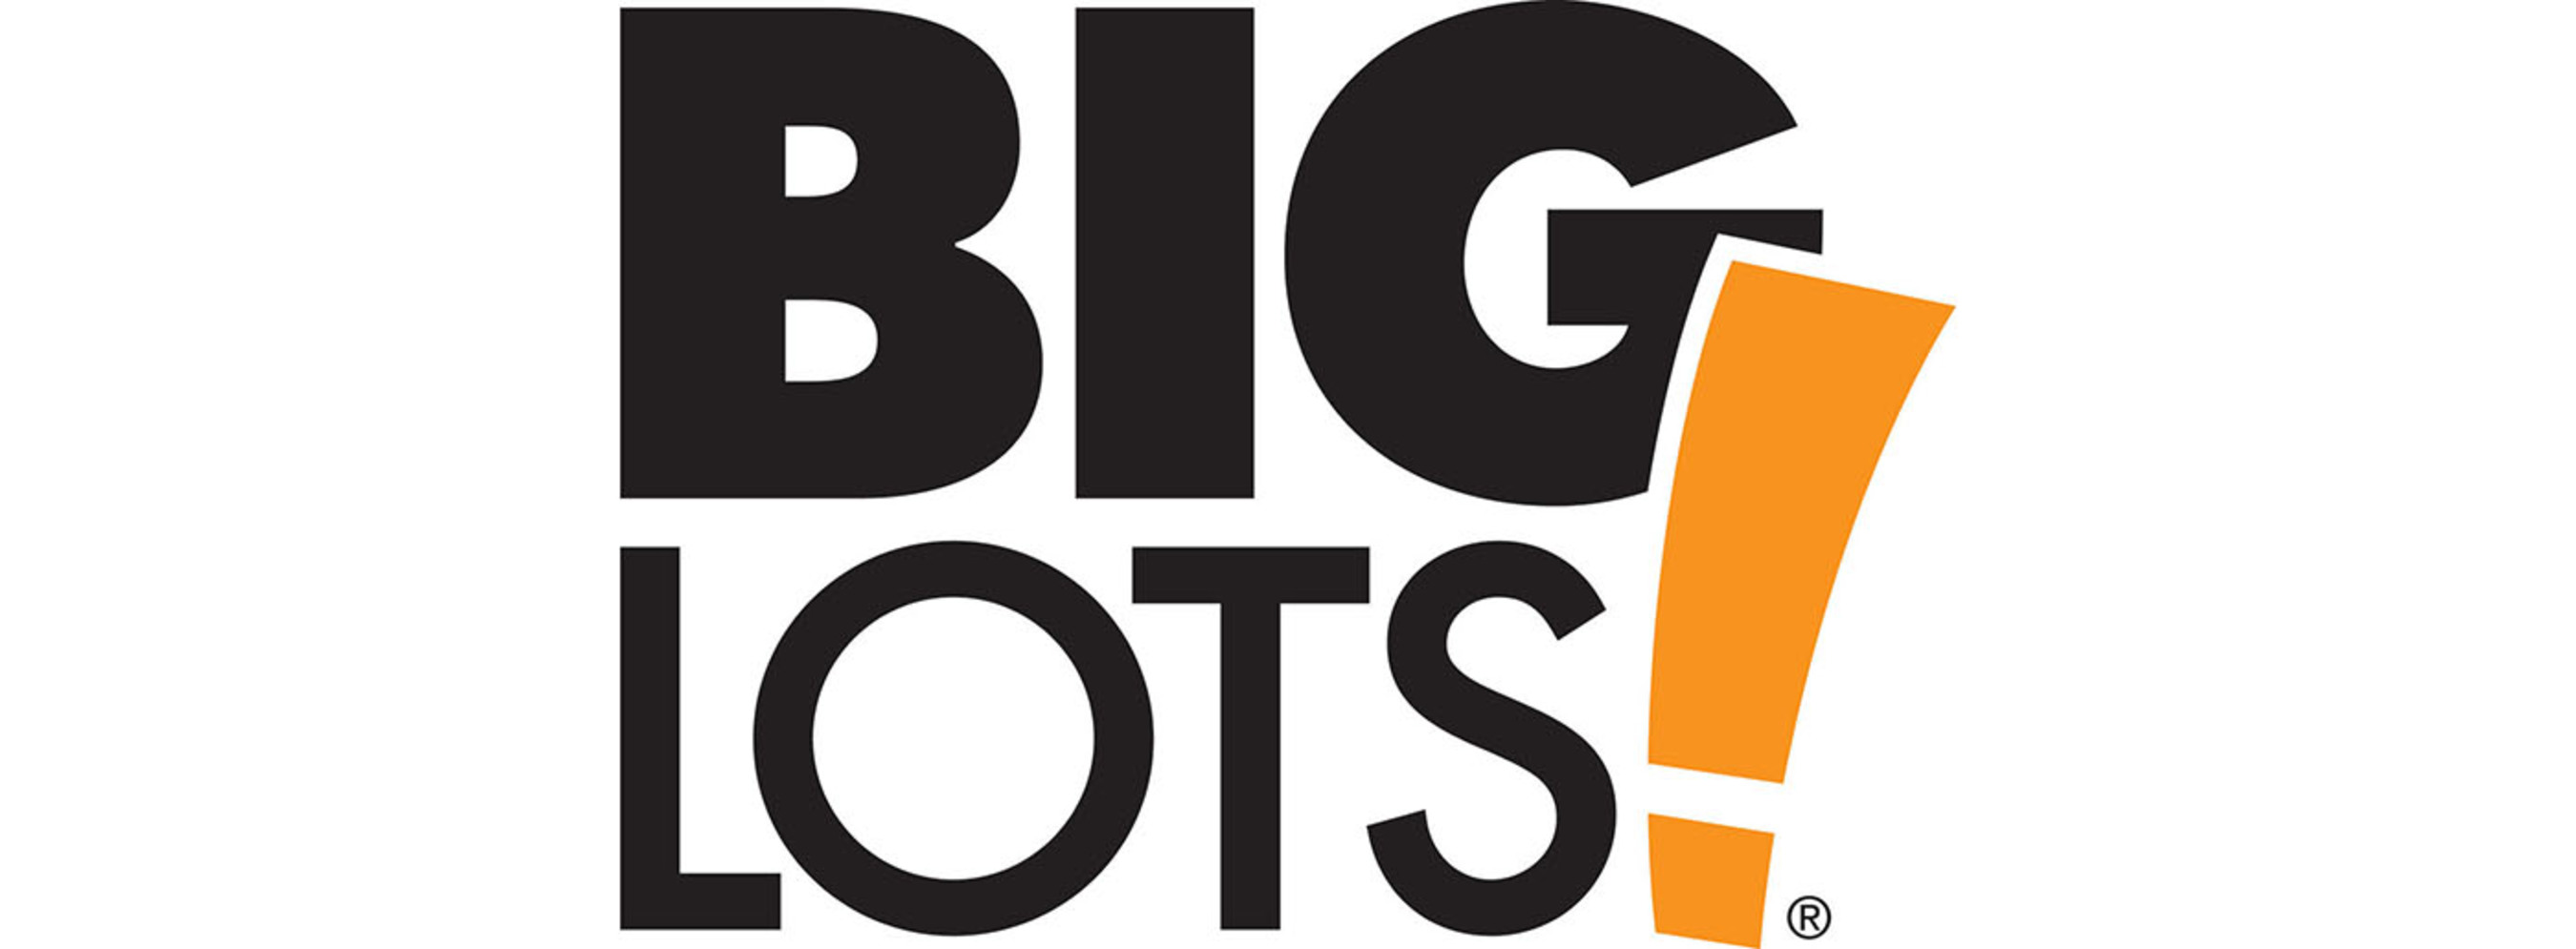 Big Lots, Inc. logo. (PRNewsFoto/Big Lots, Inc.) (PRNewsFoto/)